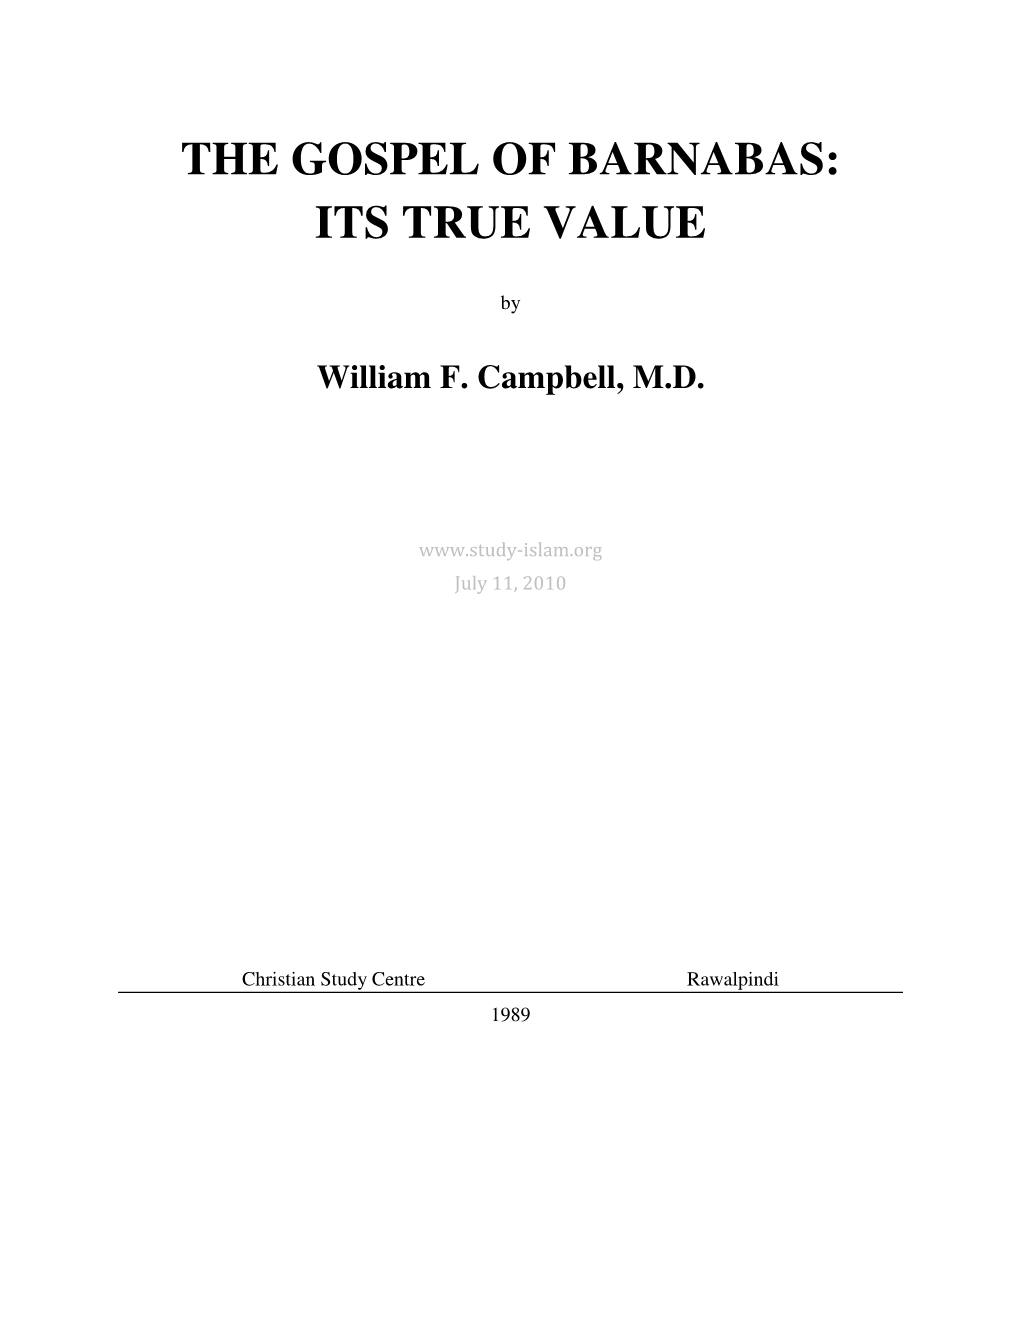 Gospel of Barnabas: Its True Value